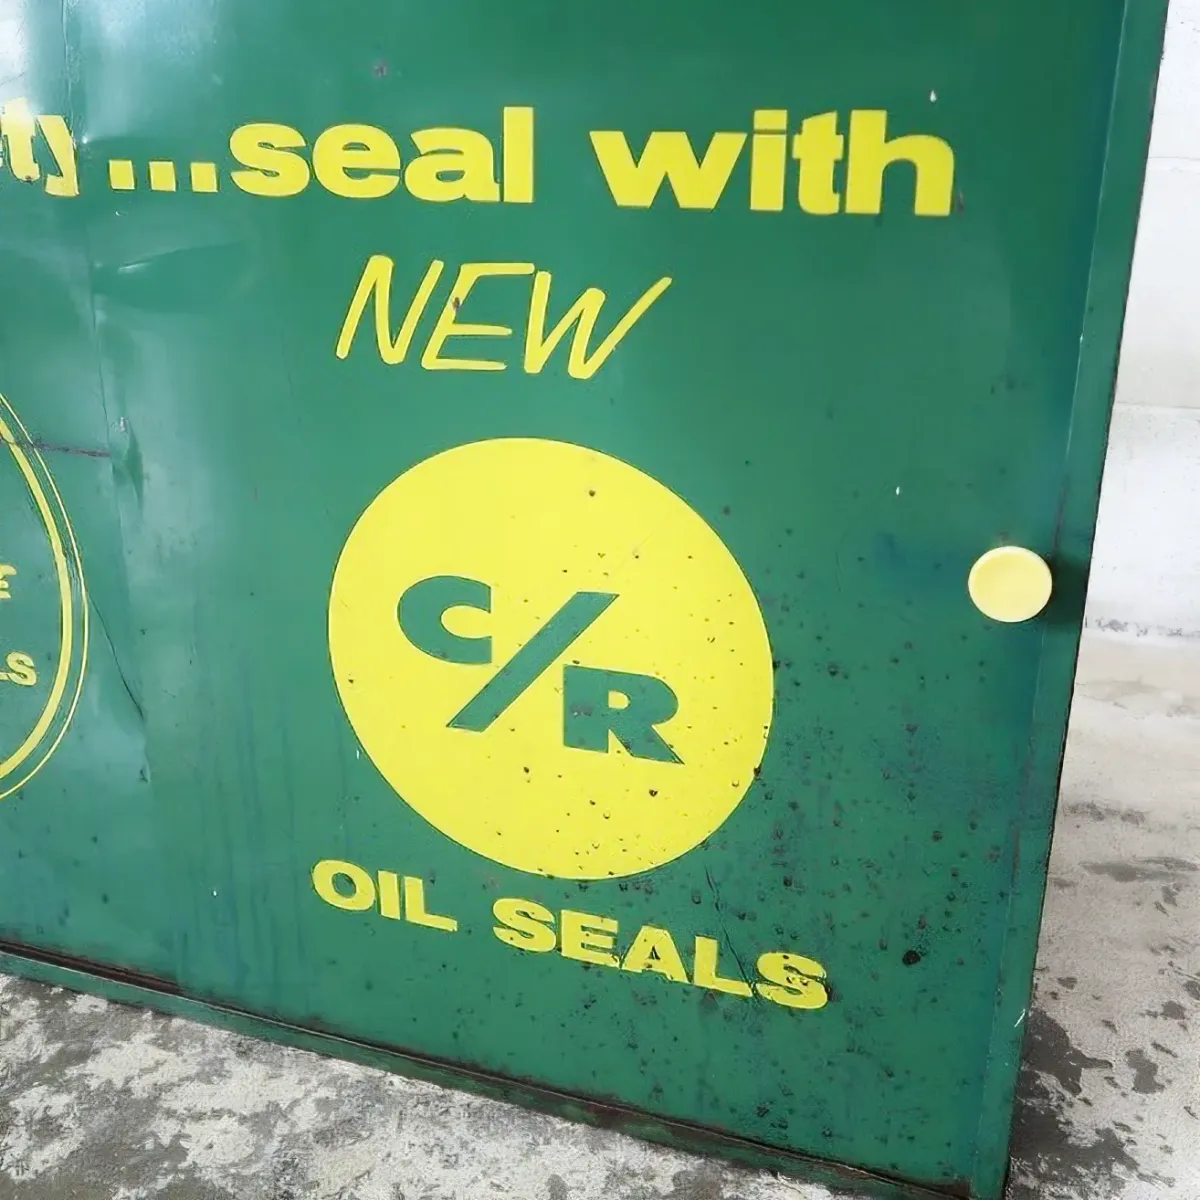 C/R OIL SEALS ビンテージ パーツキャビネット